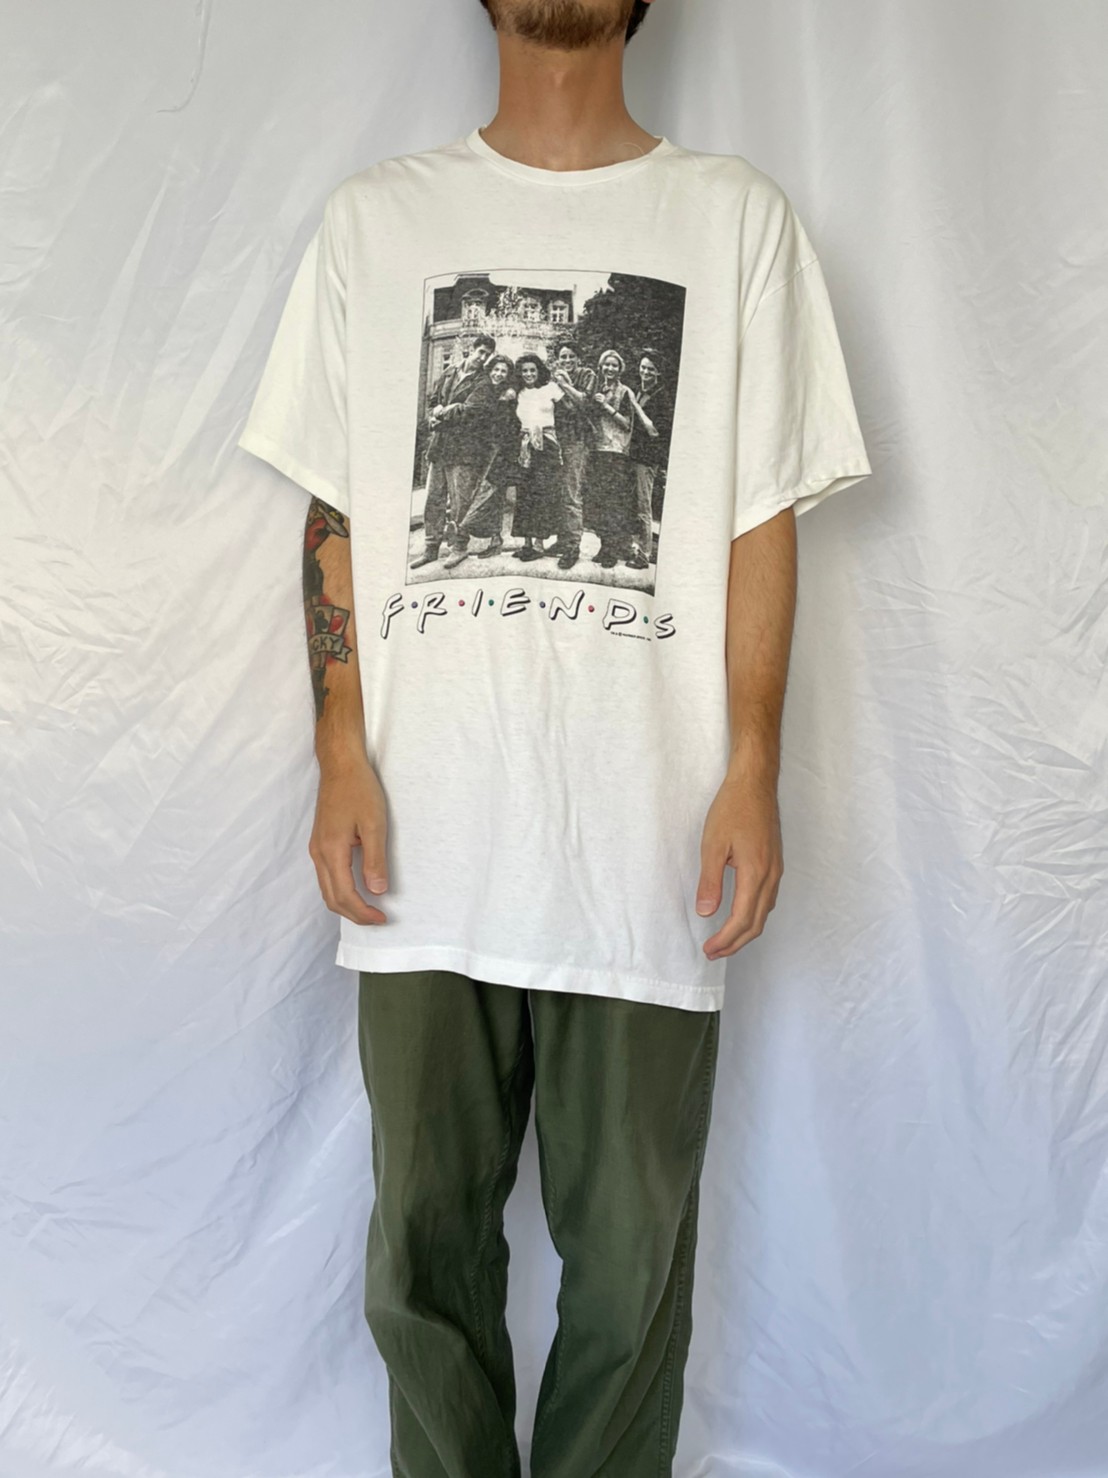 T7】フレンズ Friends Tシャツ 1995年コピーライト 海外ドラマ